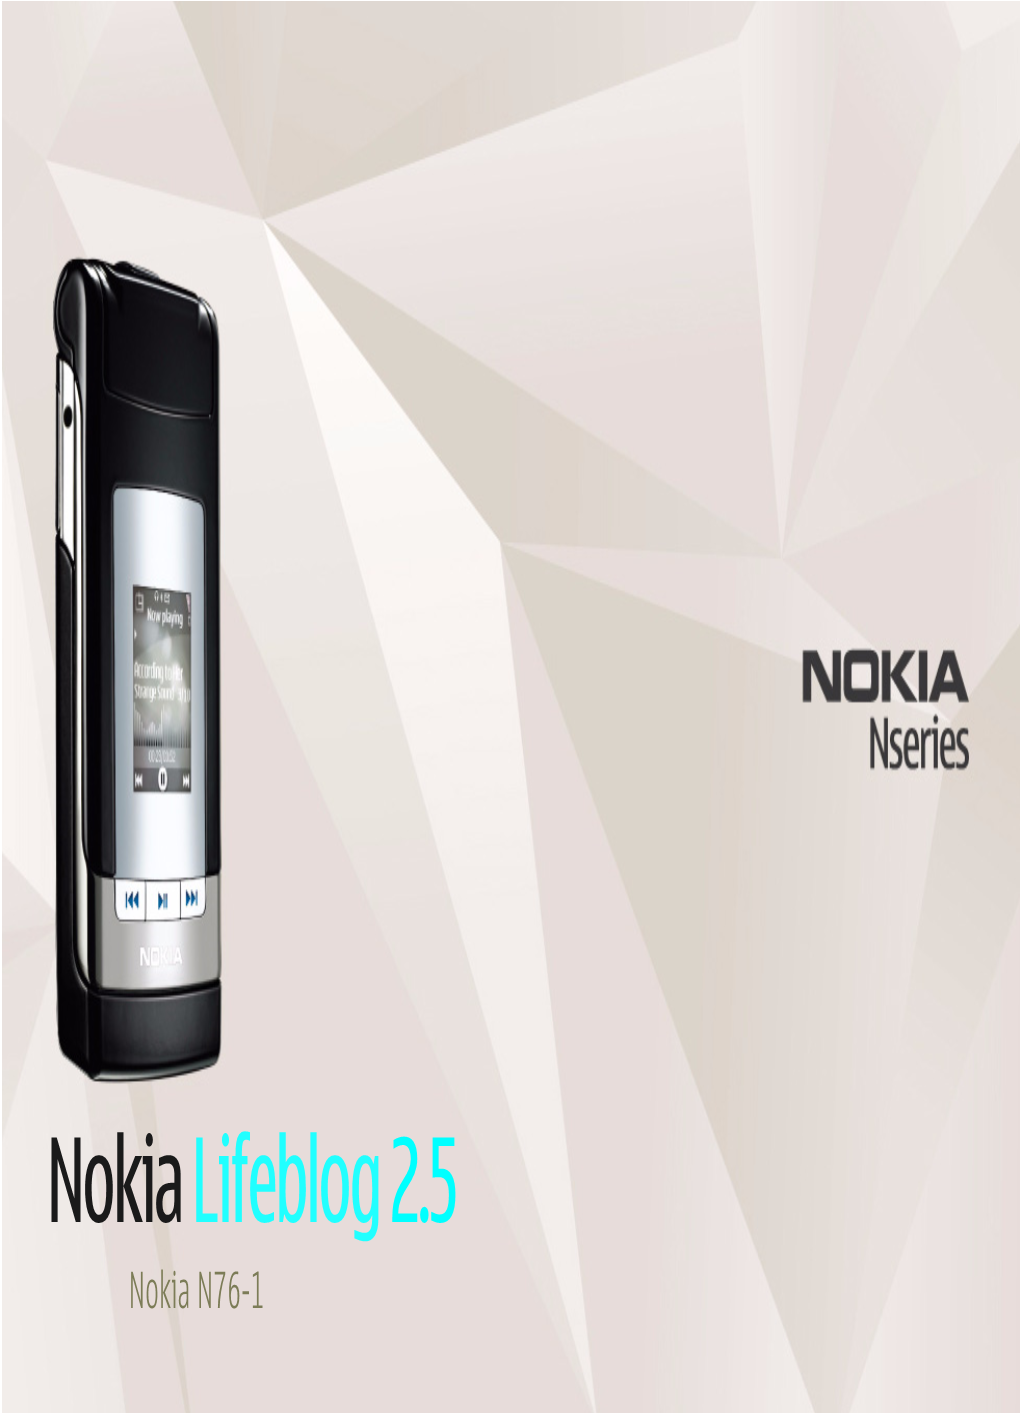 Nokia Lifeblog 2.5 Nokia N76-1 © 2007 Nokia